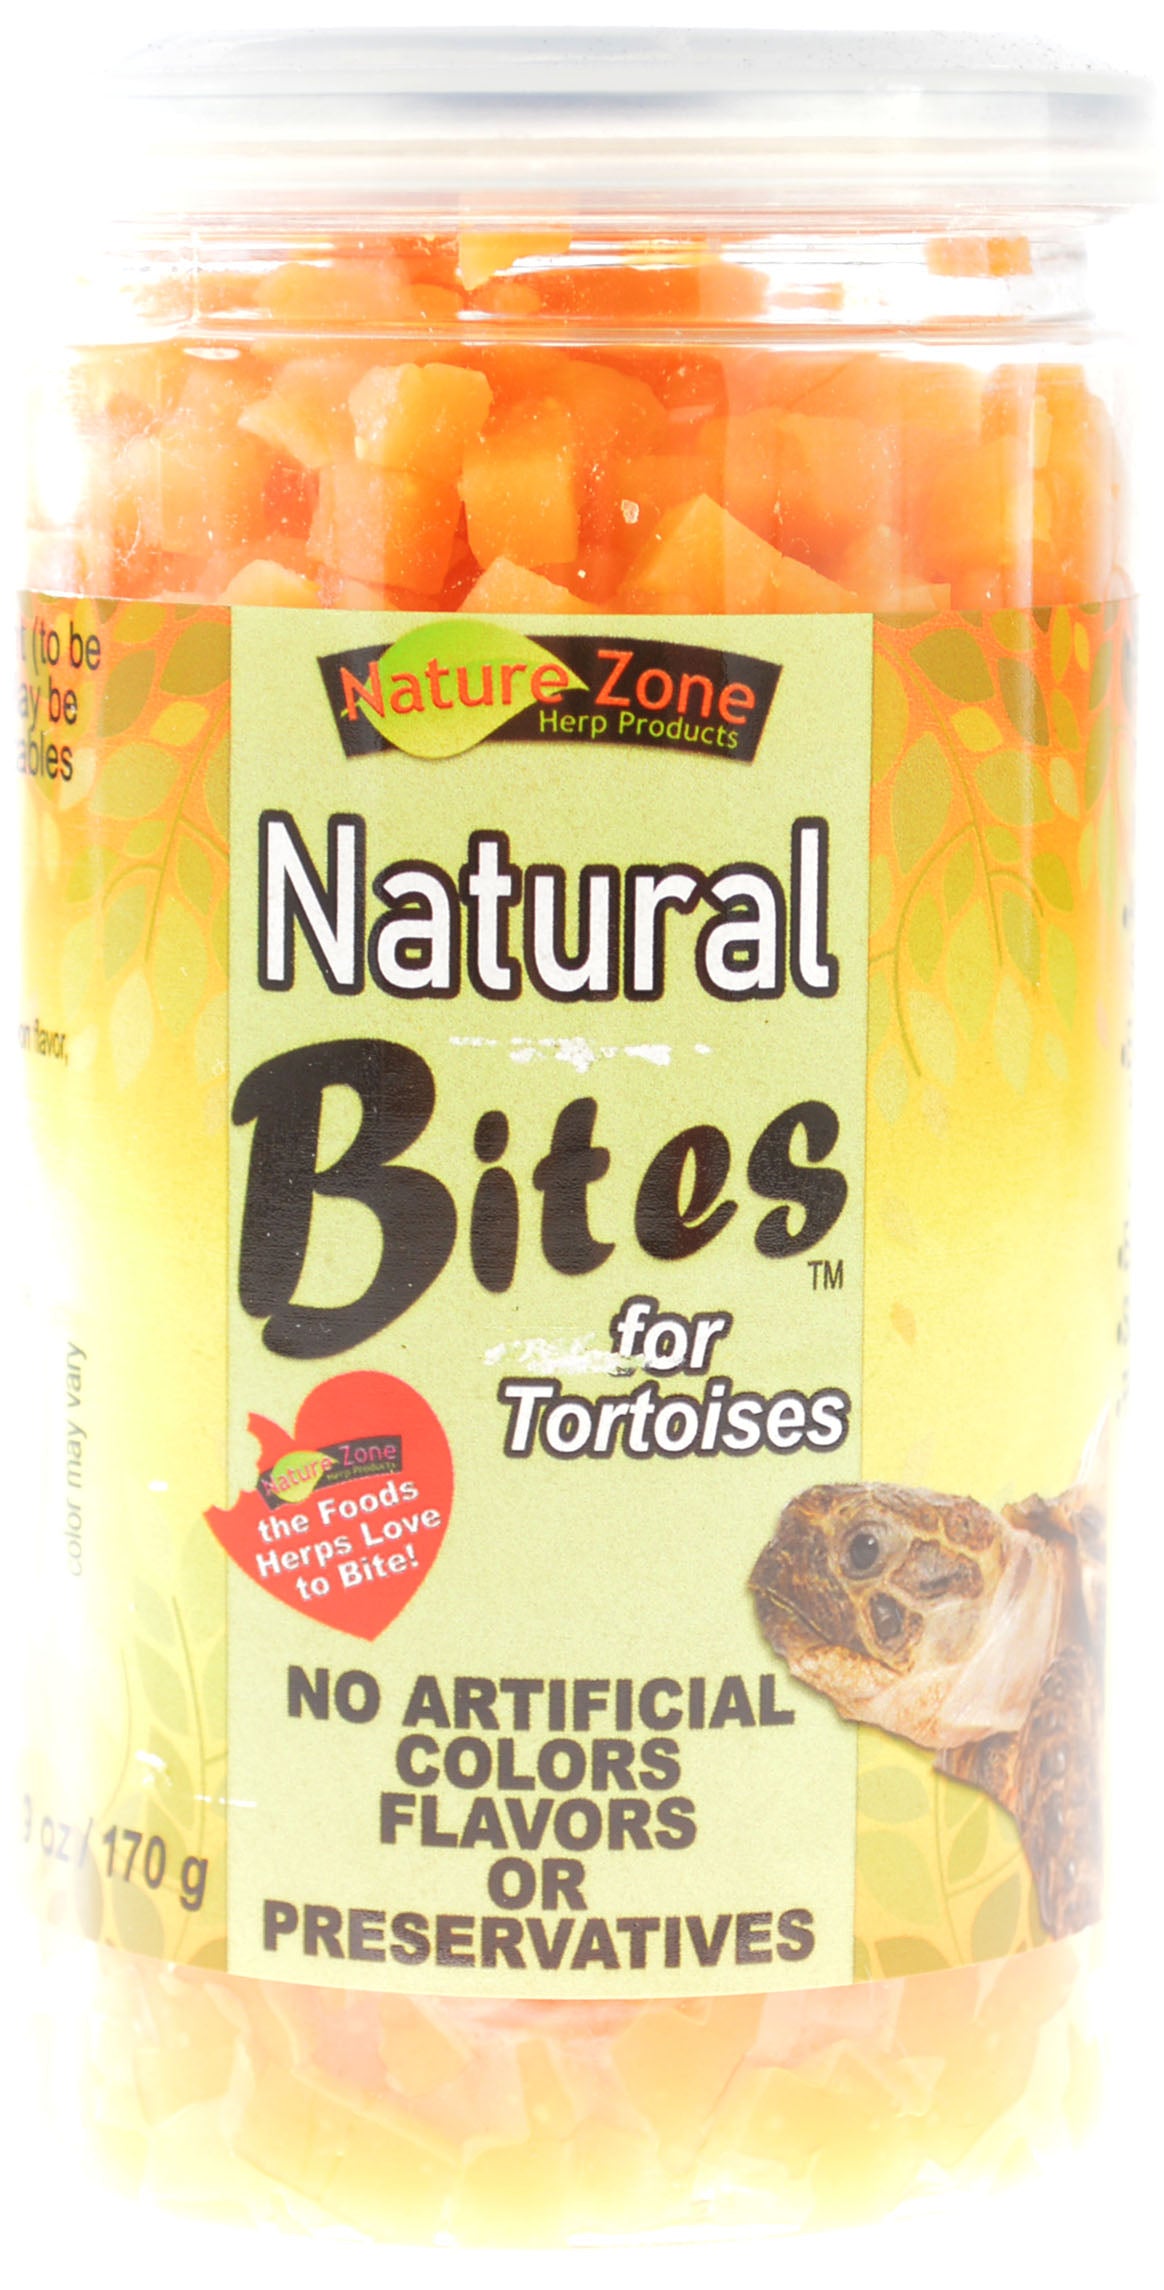 9 oz Nature Zone Natural Bites for Tortoises